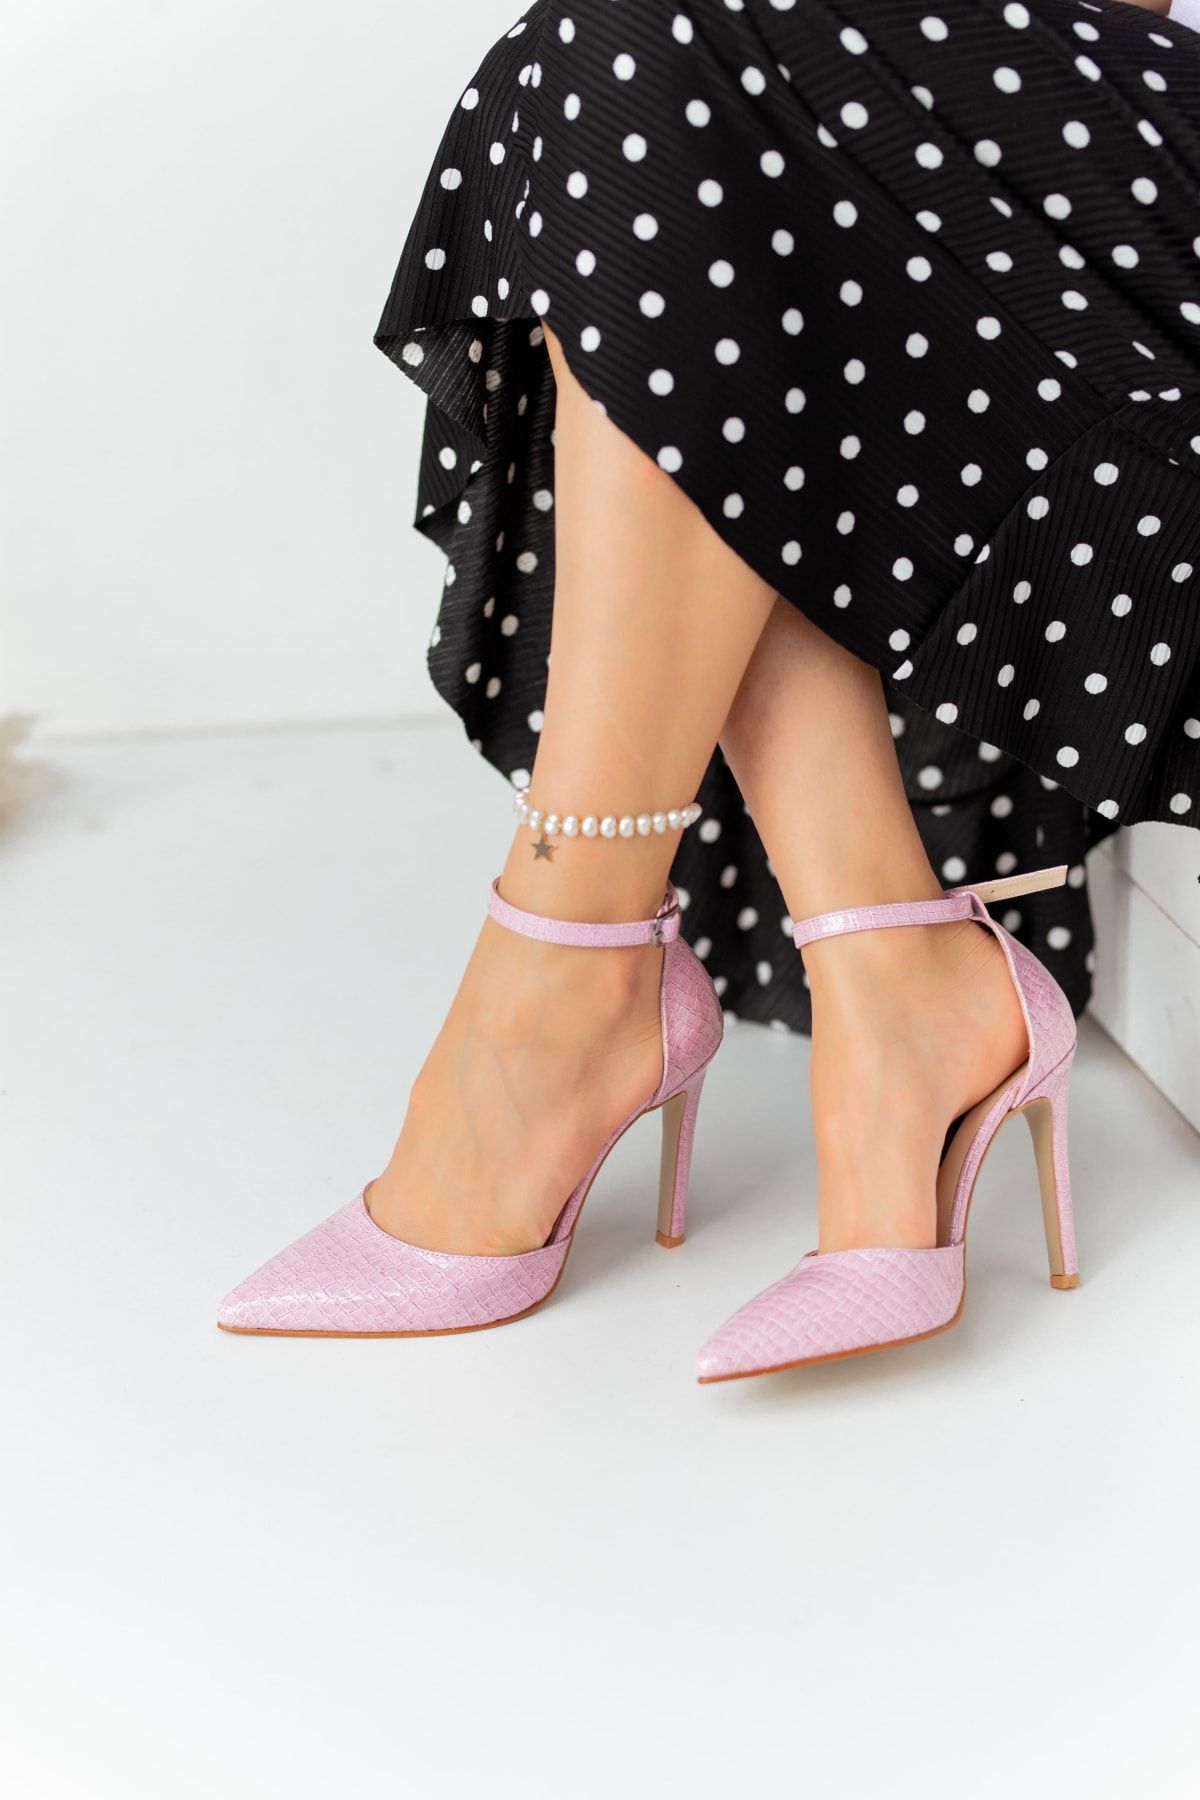 Lİmar Shoes Limar Lila Yılan Derisi Desenli Stiletto Sivri Burun Kadın Topuklu Ayakkabı